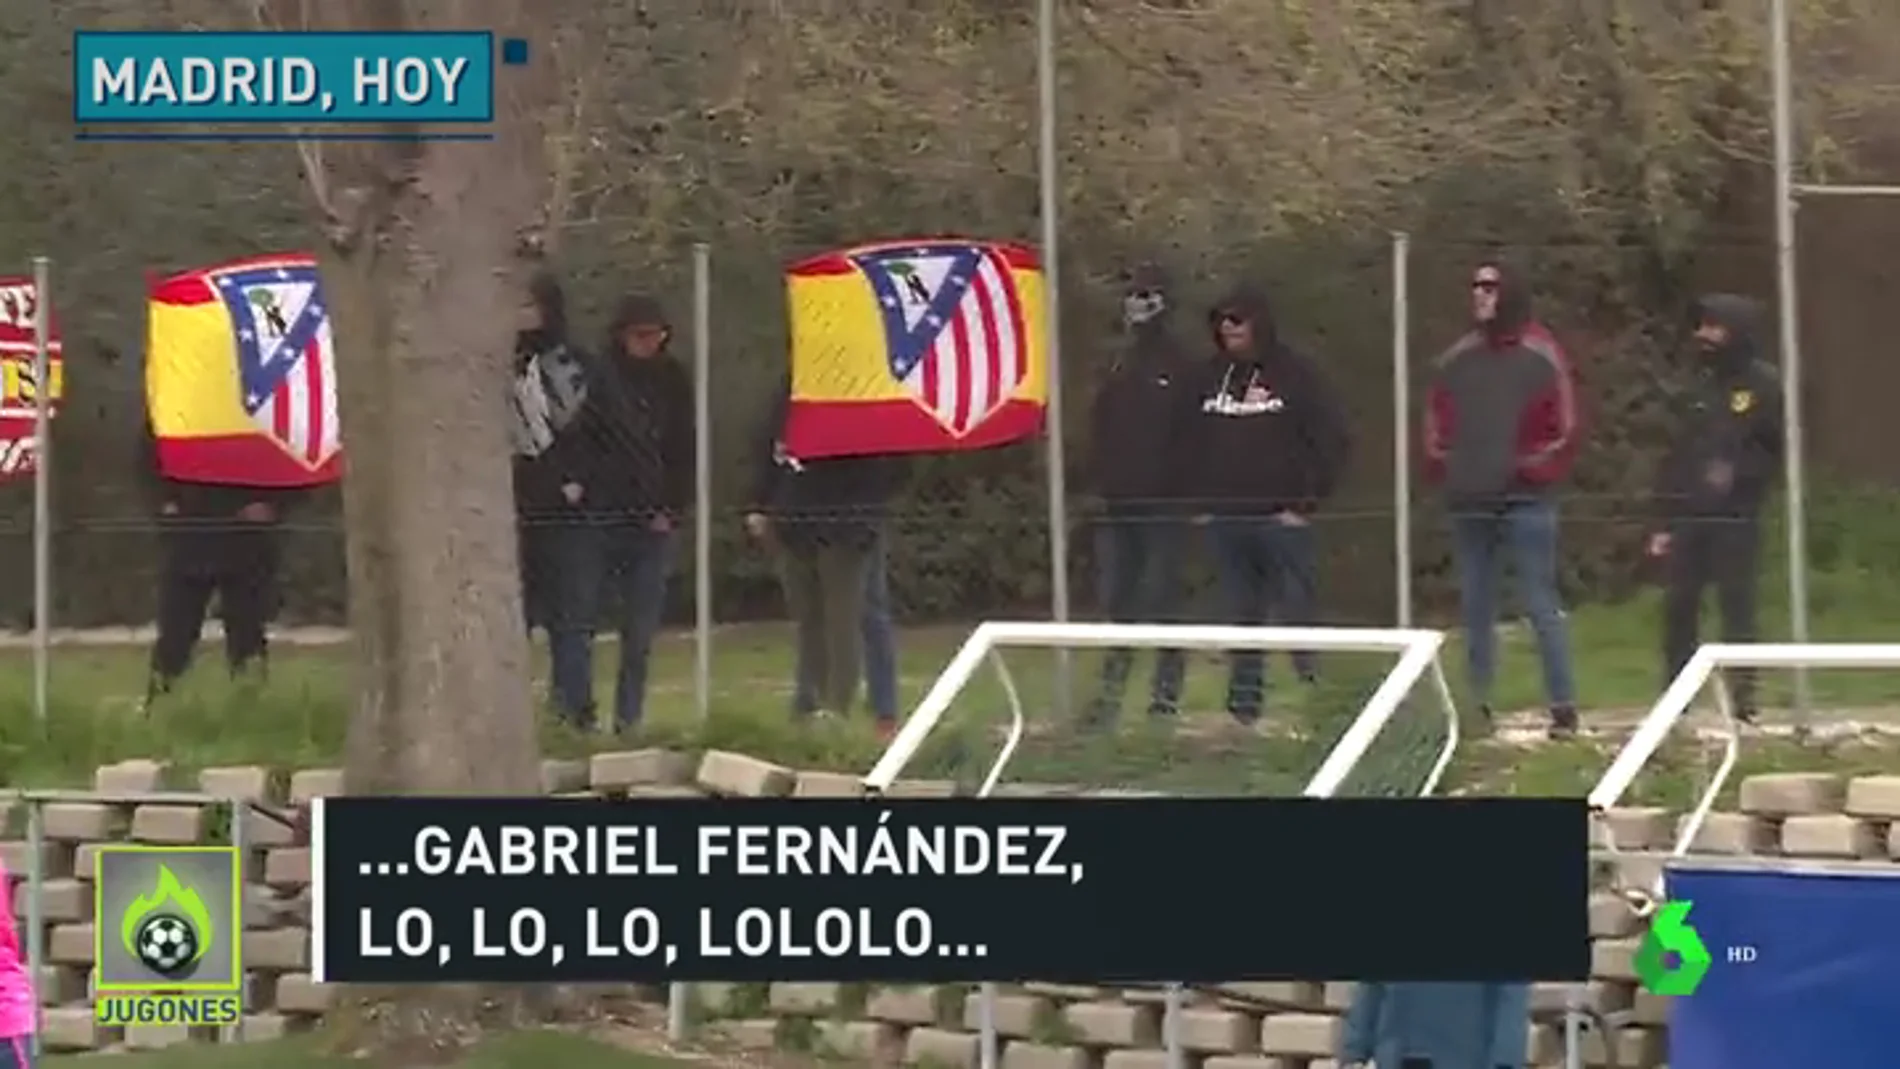 La polémica del escudo del Atlético continúa: el Frente se presenta en el entrenamiento y vitorea a Gabi